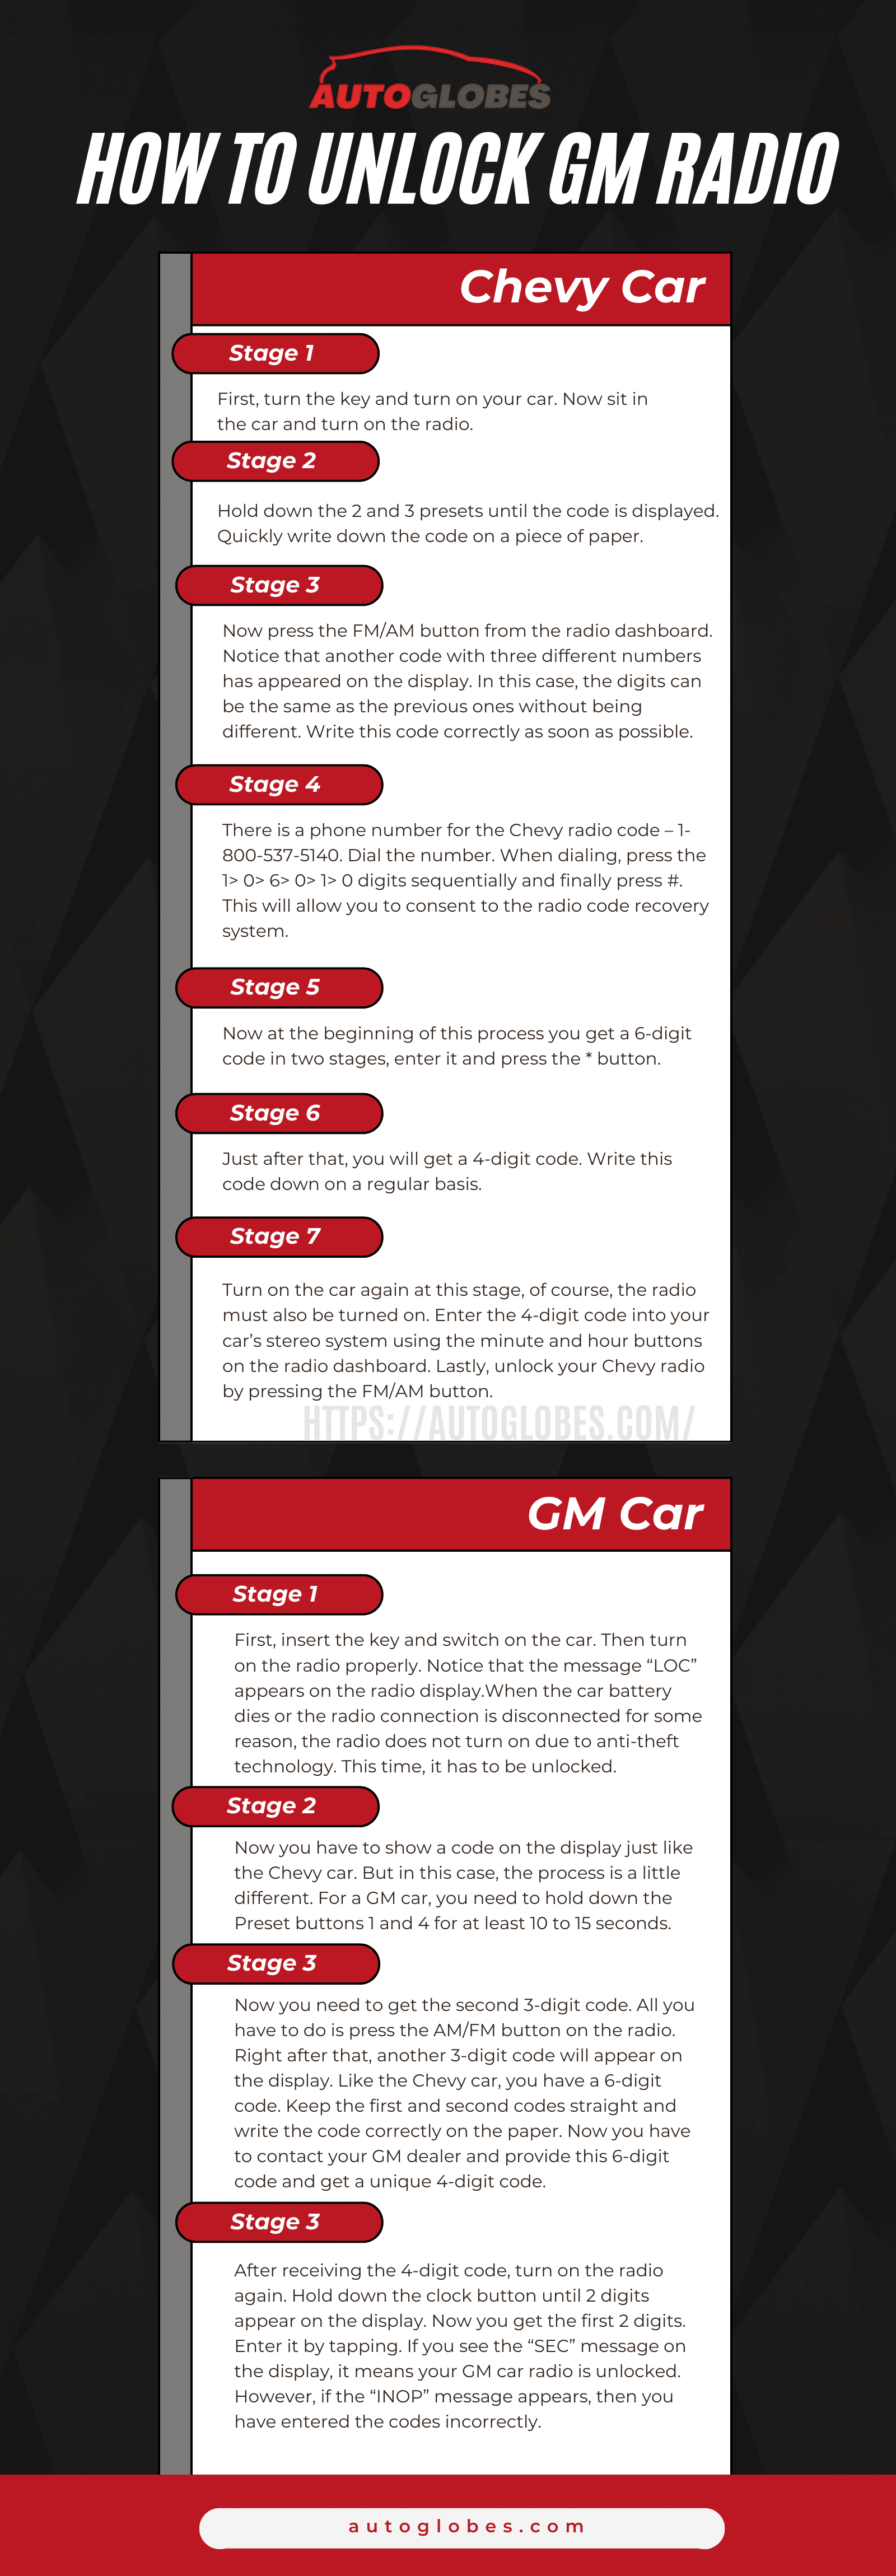 How to Unlock GM Radio infographic